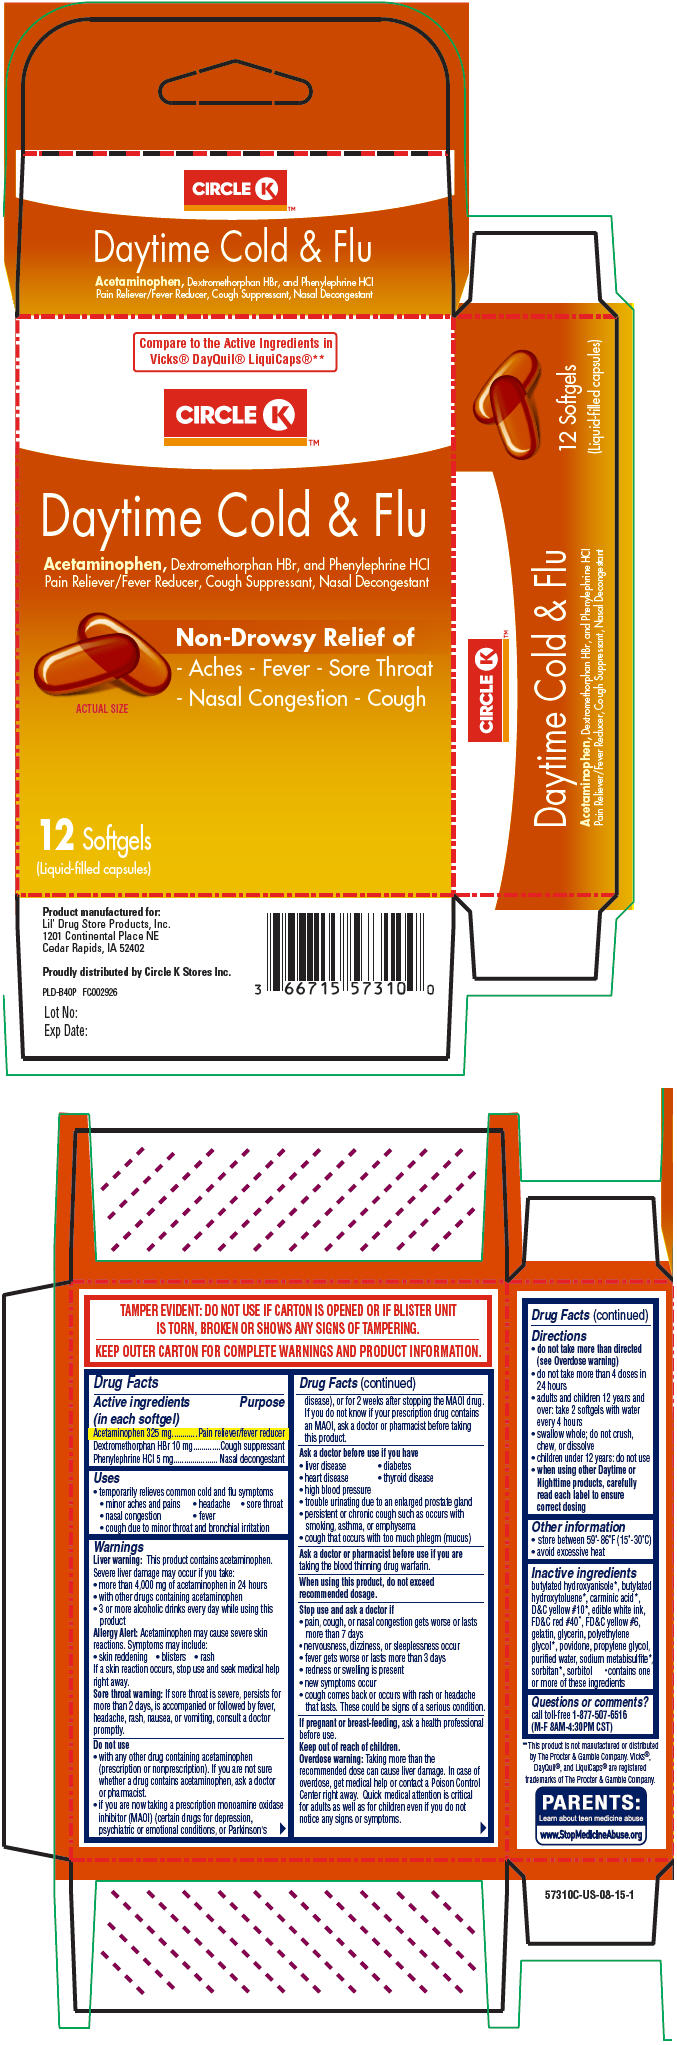 Principal Display Panel - 12 Capsule Blister Pack Carton - 5731